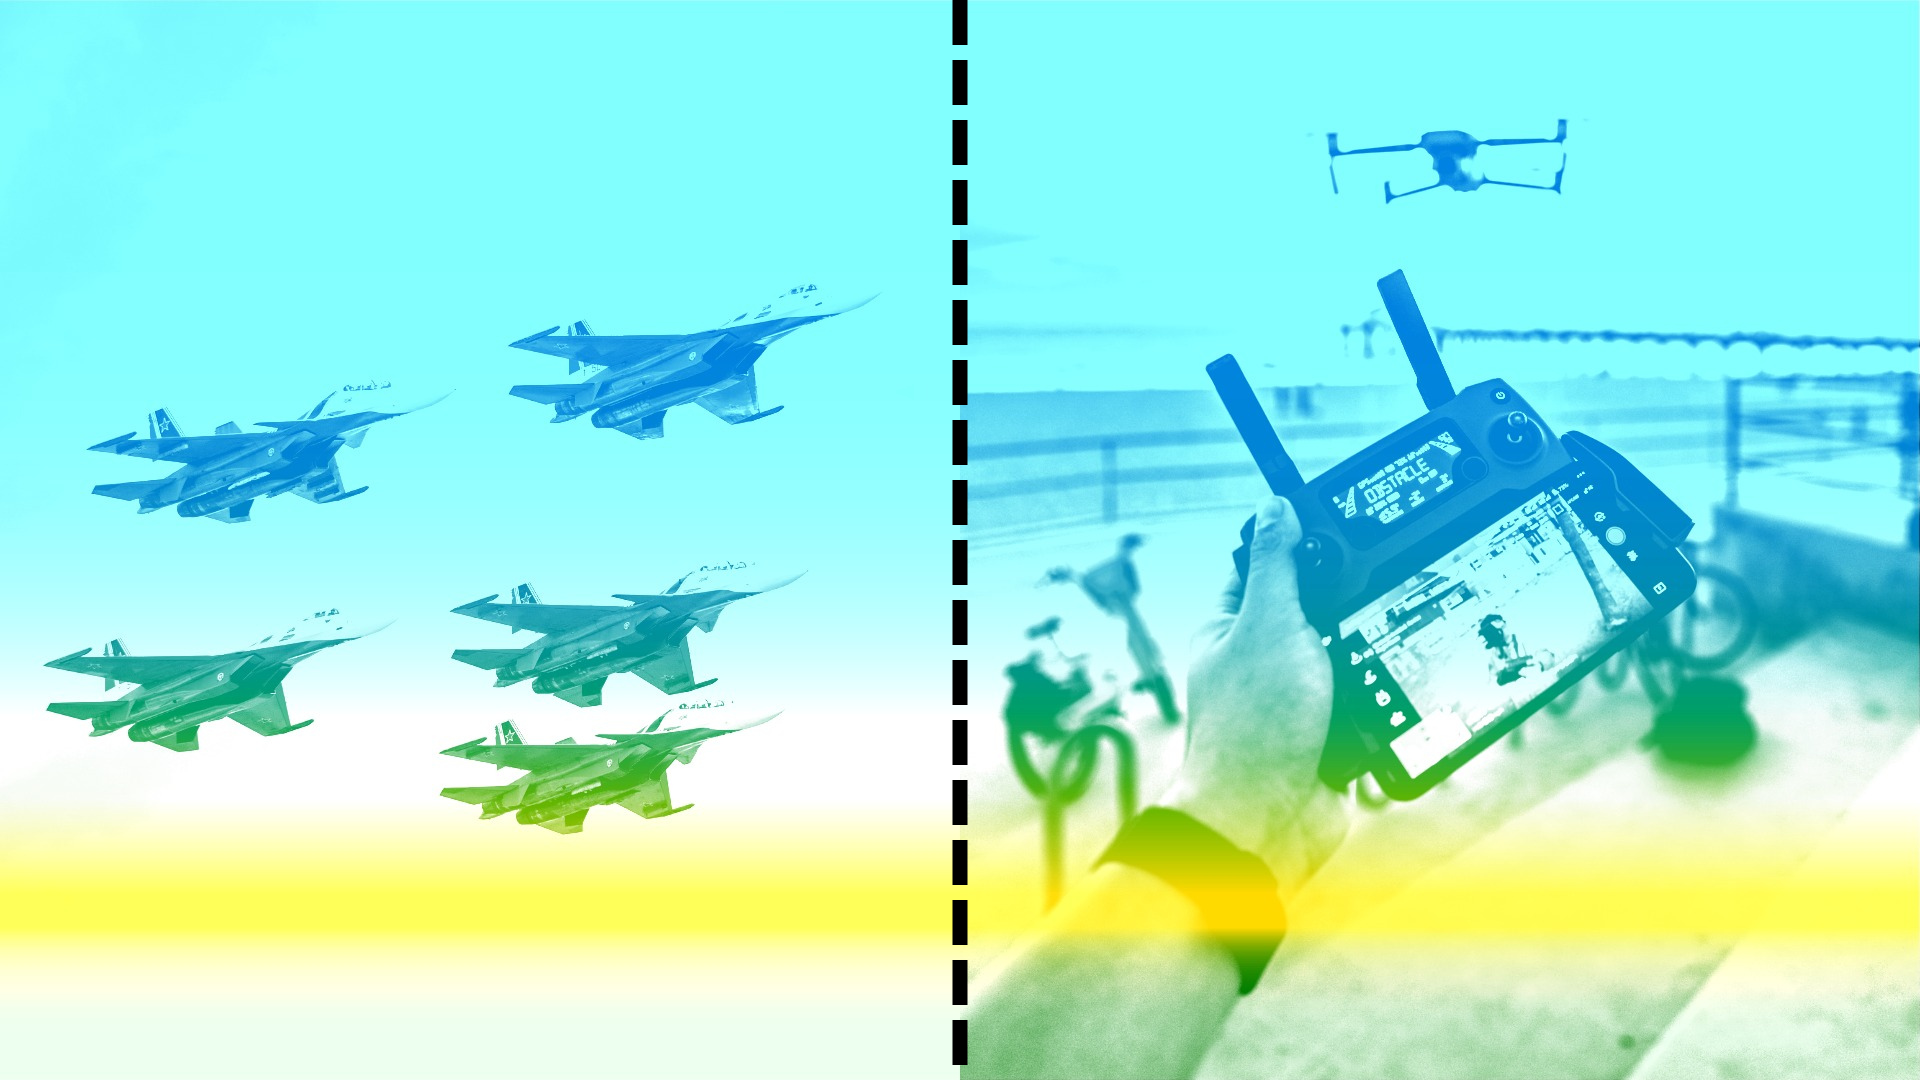 una imagen de una flota de aviones militares a la izquierda. A la derecha, una imagen de las manos de una persona que controla un dron visto en la distancia. Las imágenes están separadas por una línea perforada.